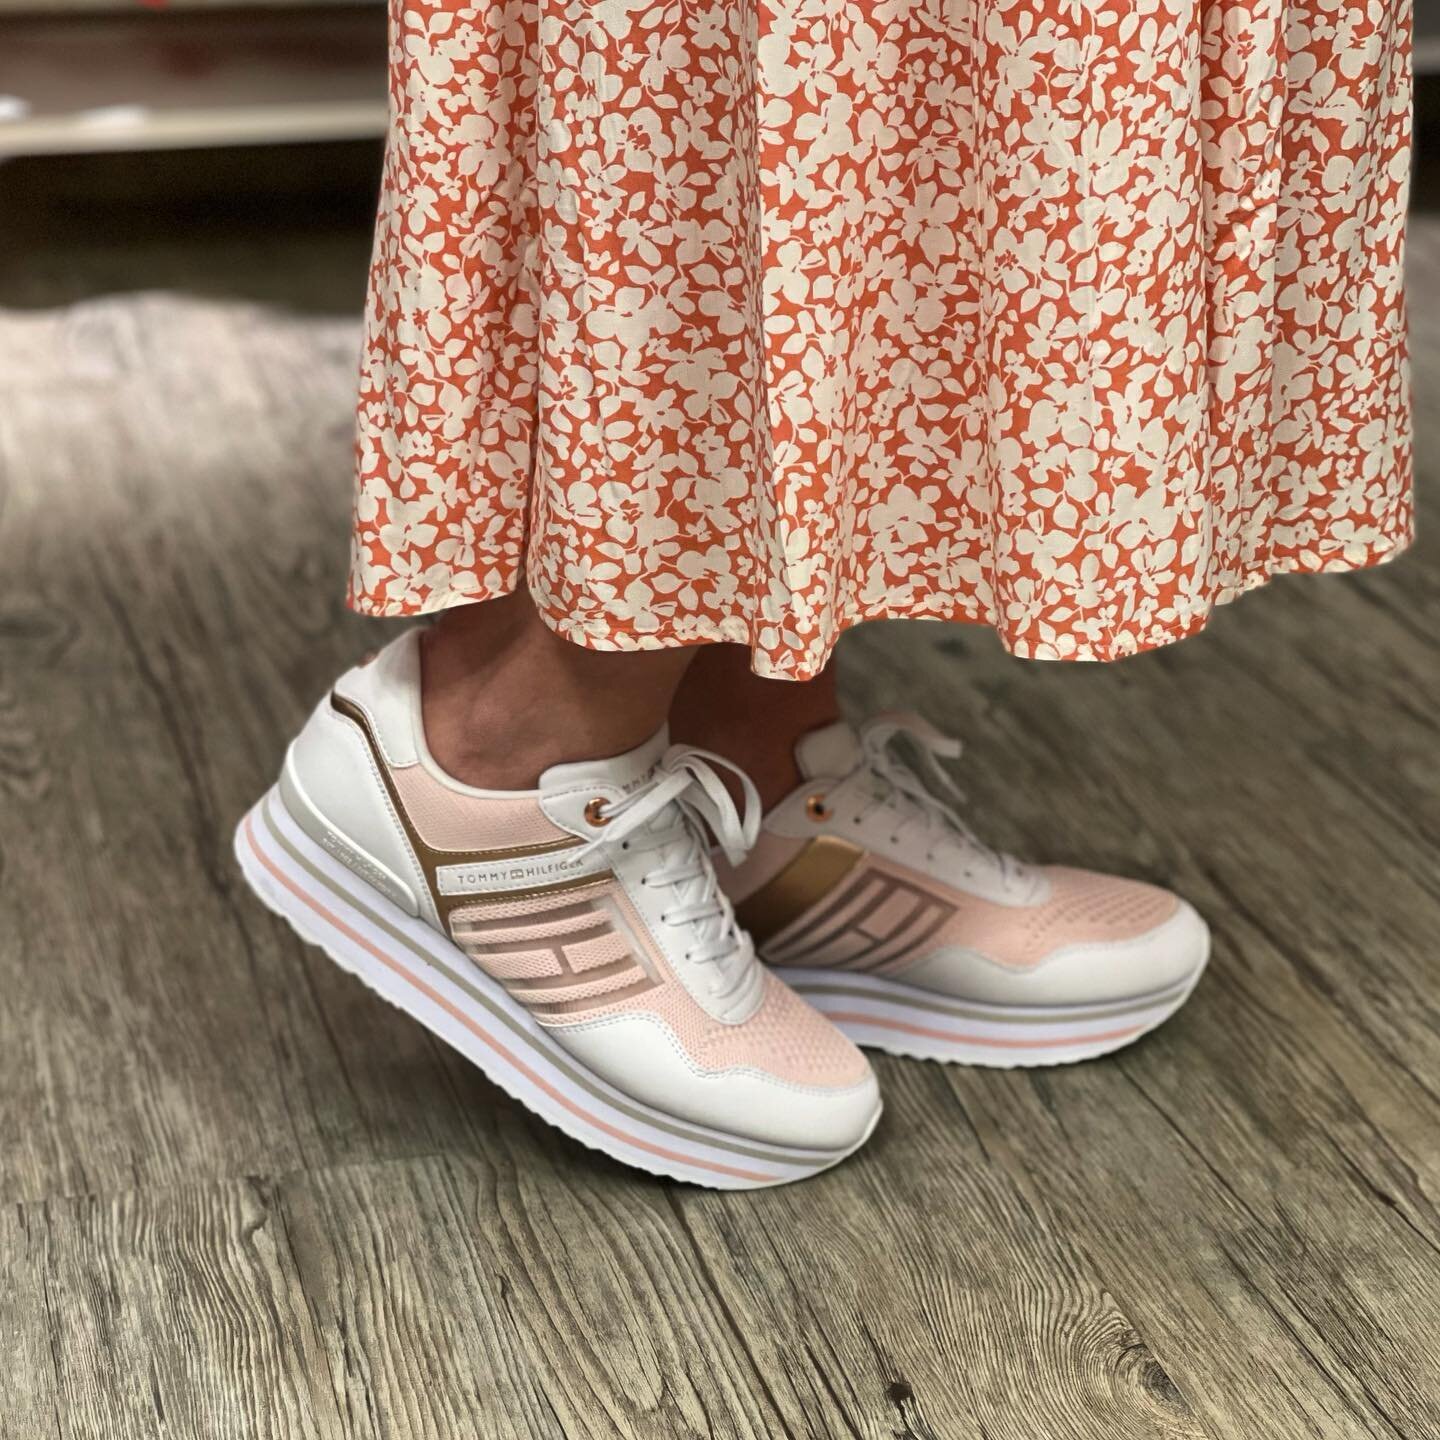 Hallo lieber Fr&uuml;hling, wann bringst du uns endlich w&auml;rmere Temperaturen in M&uuml;lheim? 
Wir haben so tolle neue Schuhe und Kleider...und die Teile warten noch auf ein paar Sonnenstrahlen! ☀️ 

#shopthelook #sneaker #fashiongirl #tommyhilf